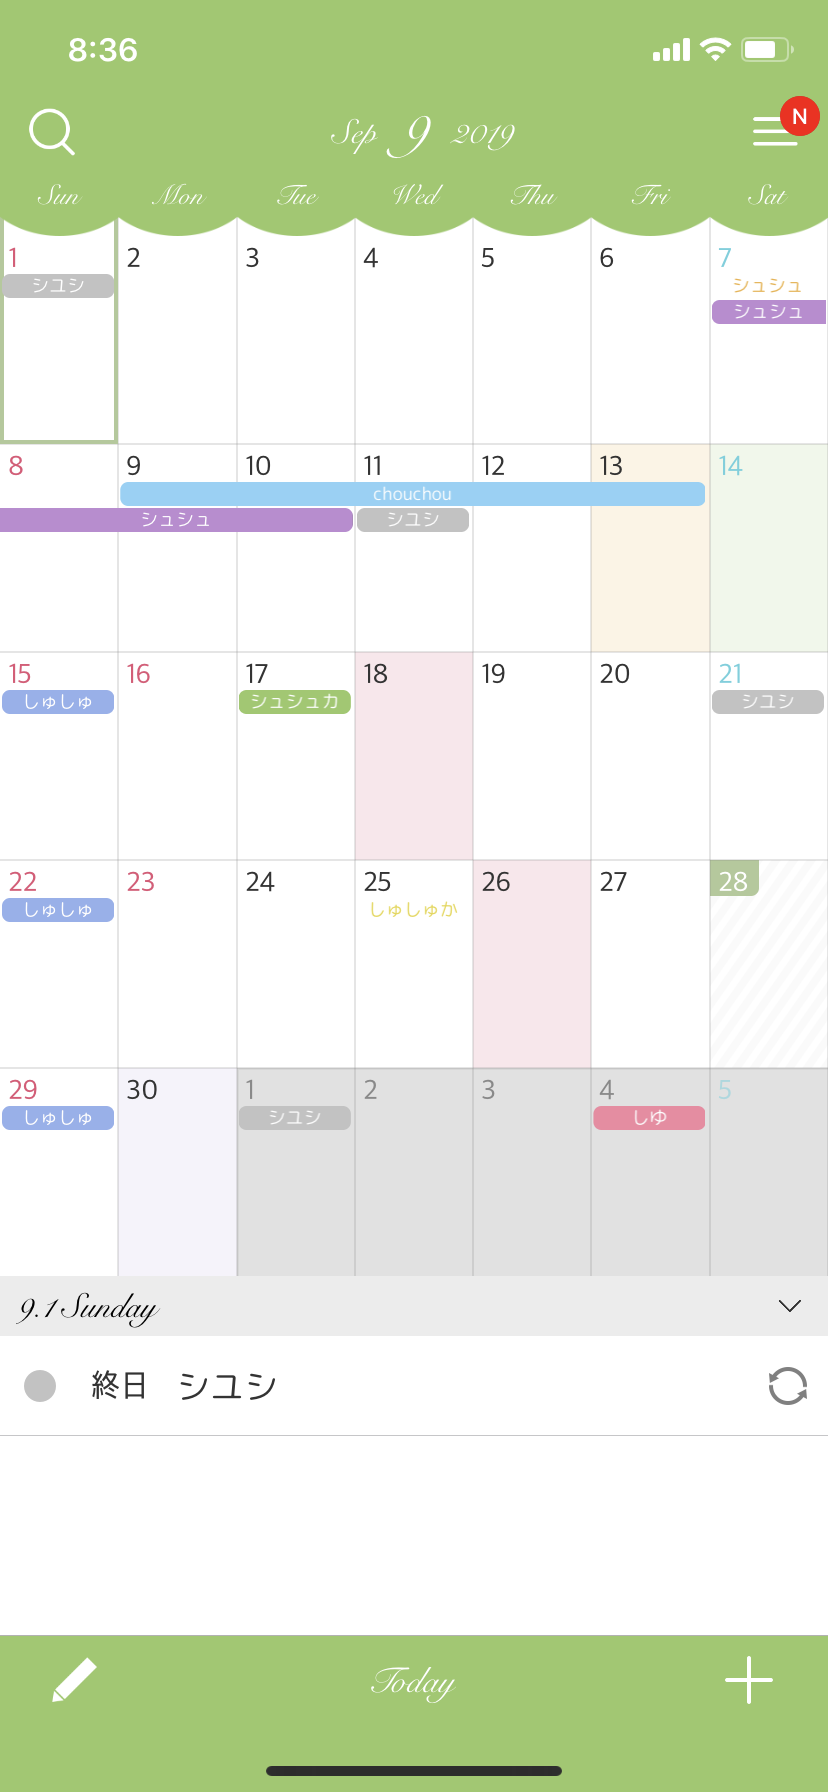 おしゃれ シンプルなiosカレンダーアプリ シュシュカレンダー のカスタマイズ例 Lcdog Note